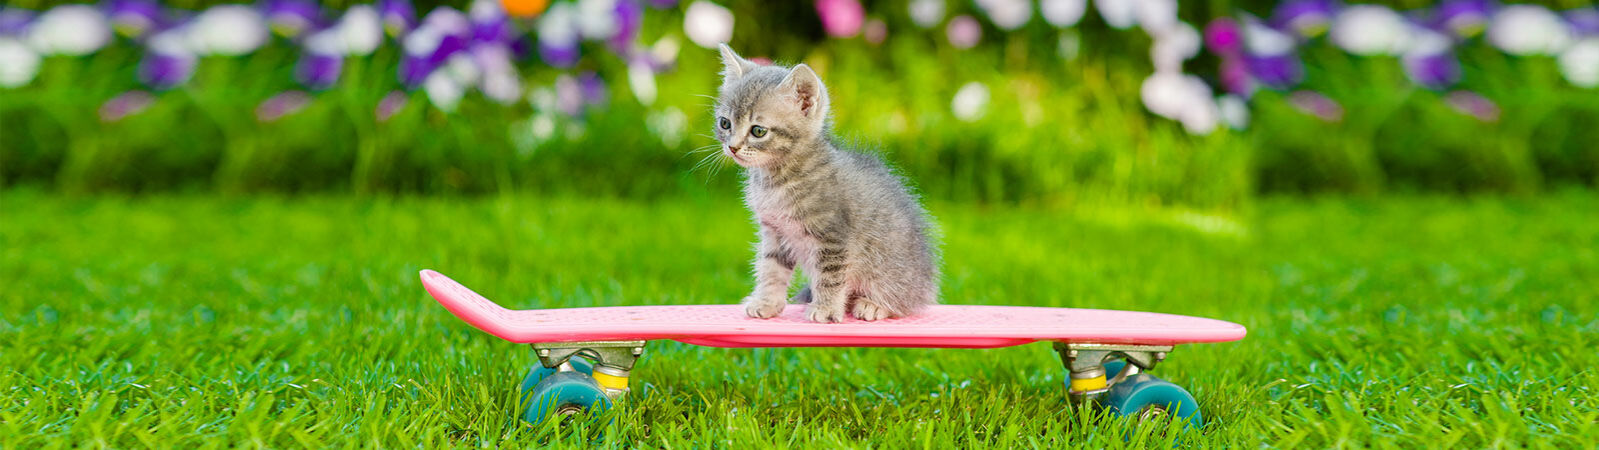 Eine kleine Katze sitzt auf einem Skateboard.